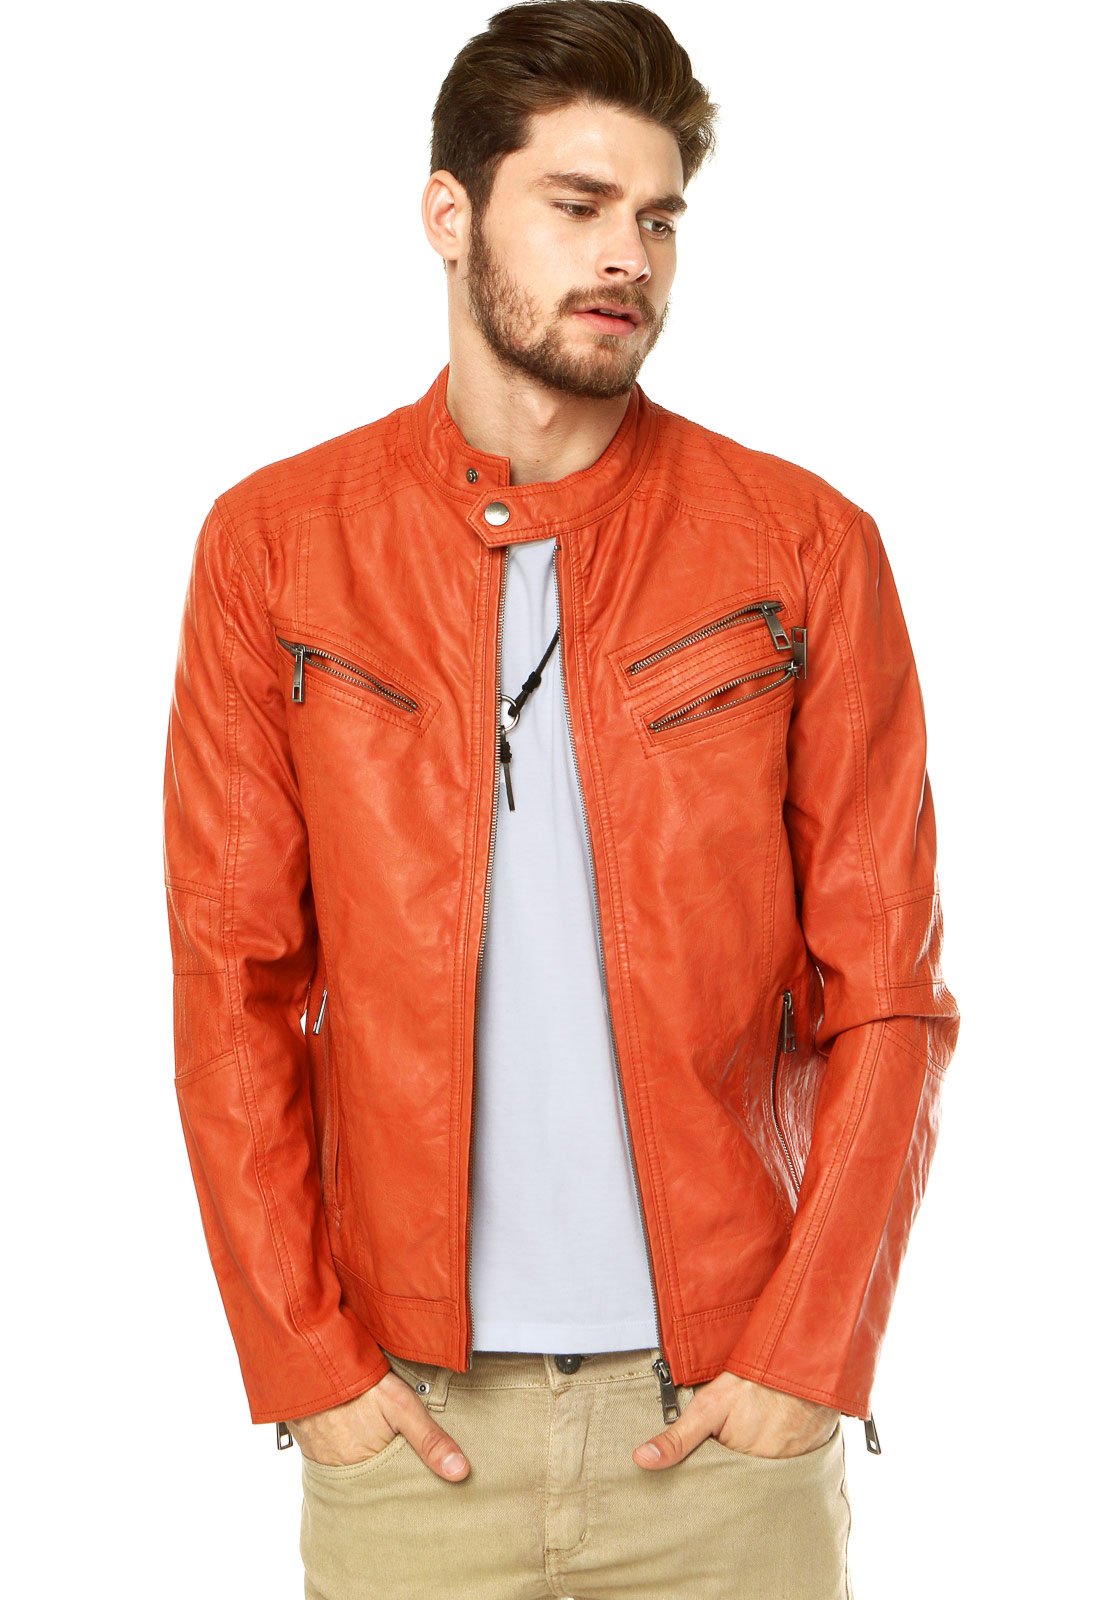 jaqueta de couro laranja